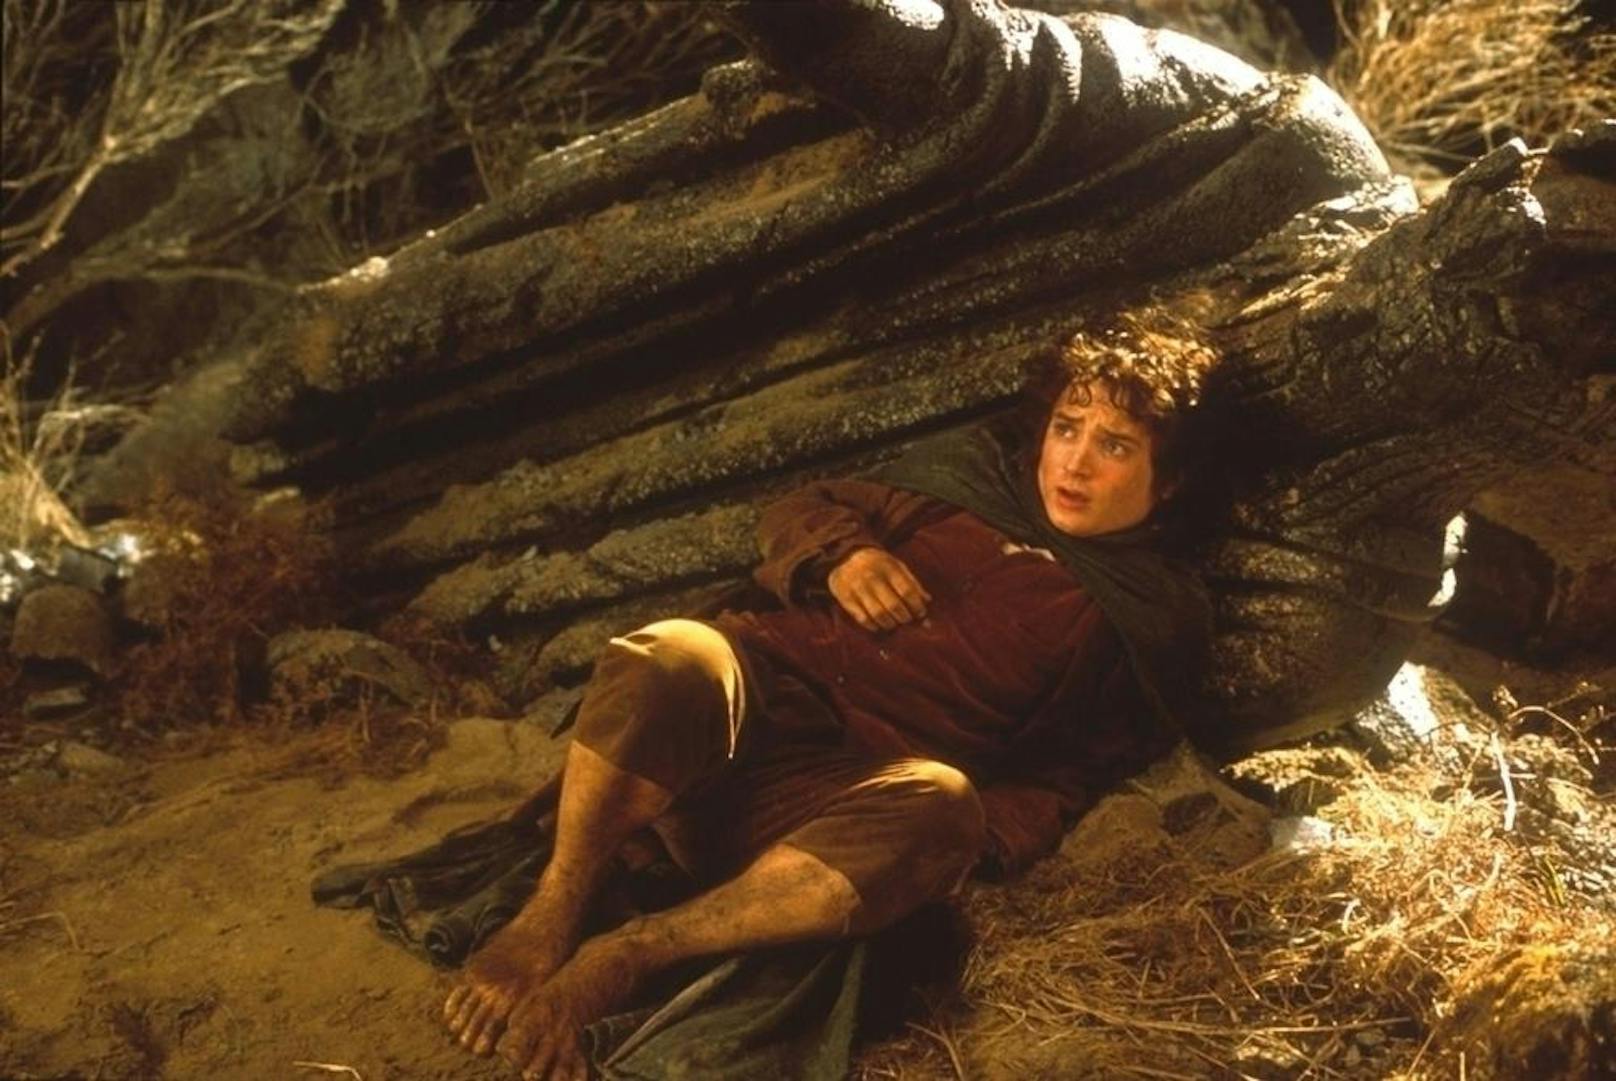 20.15 Uhr, ProSieben: "Herr der Ringe - Die Gefährten". 2001. Das Fantasyfilm erzählt über den Hobbit Bilbo Beutlin, dem ein machtvoller Ring in die Hände fällt. Mit Ian Holm, Elijah Wood und Ian McKellen.